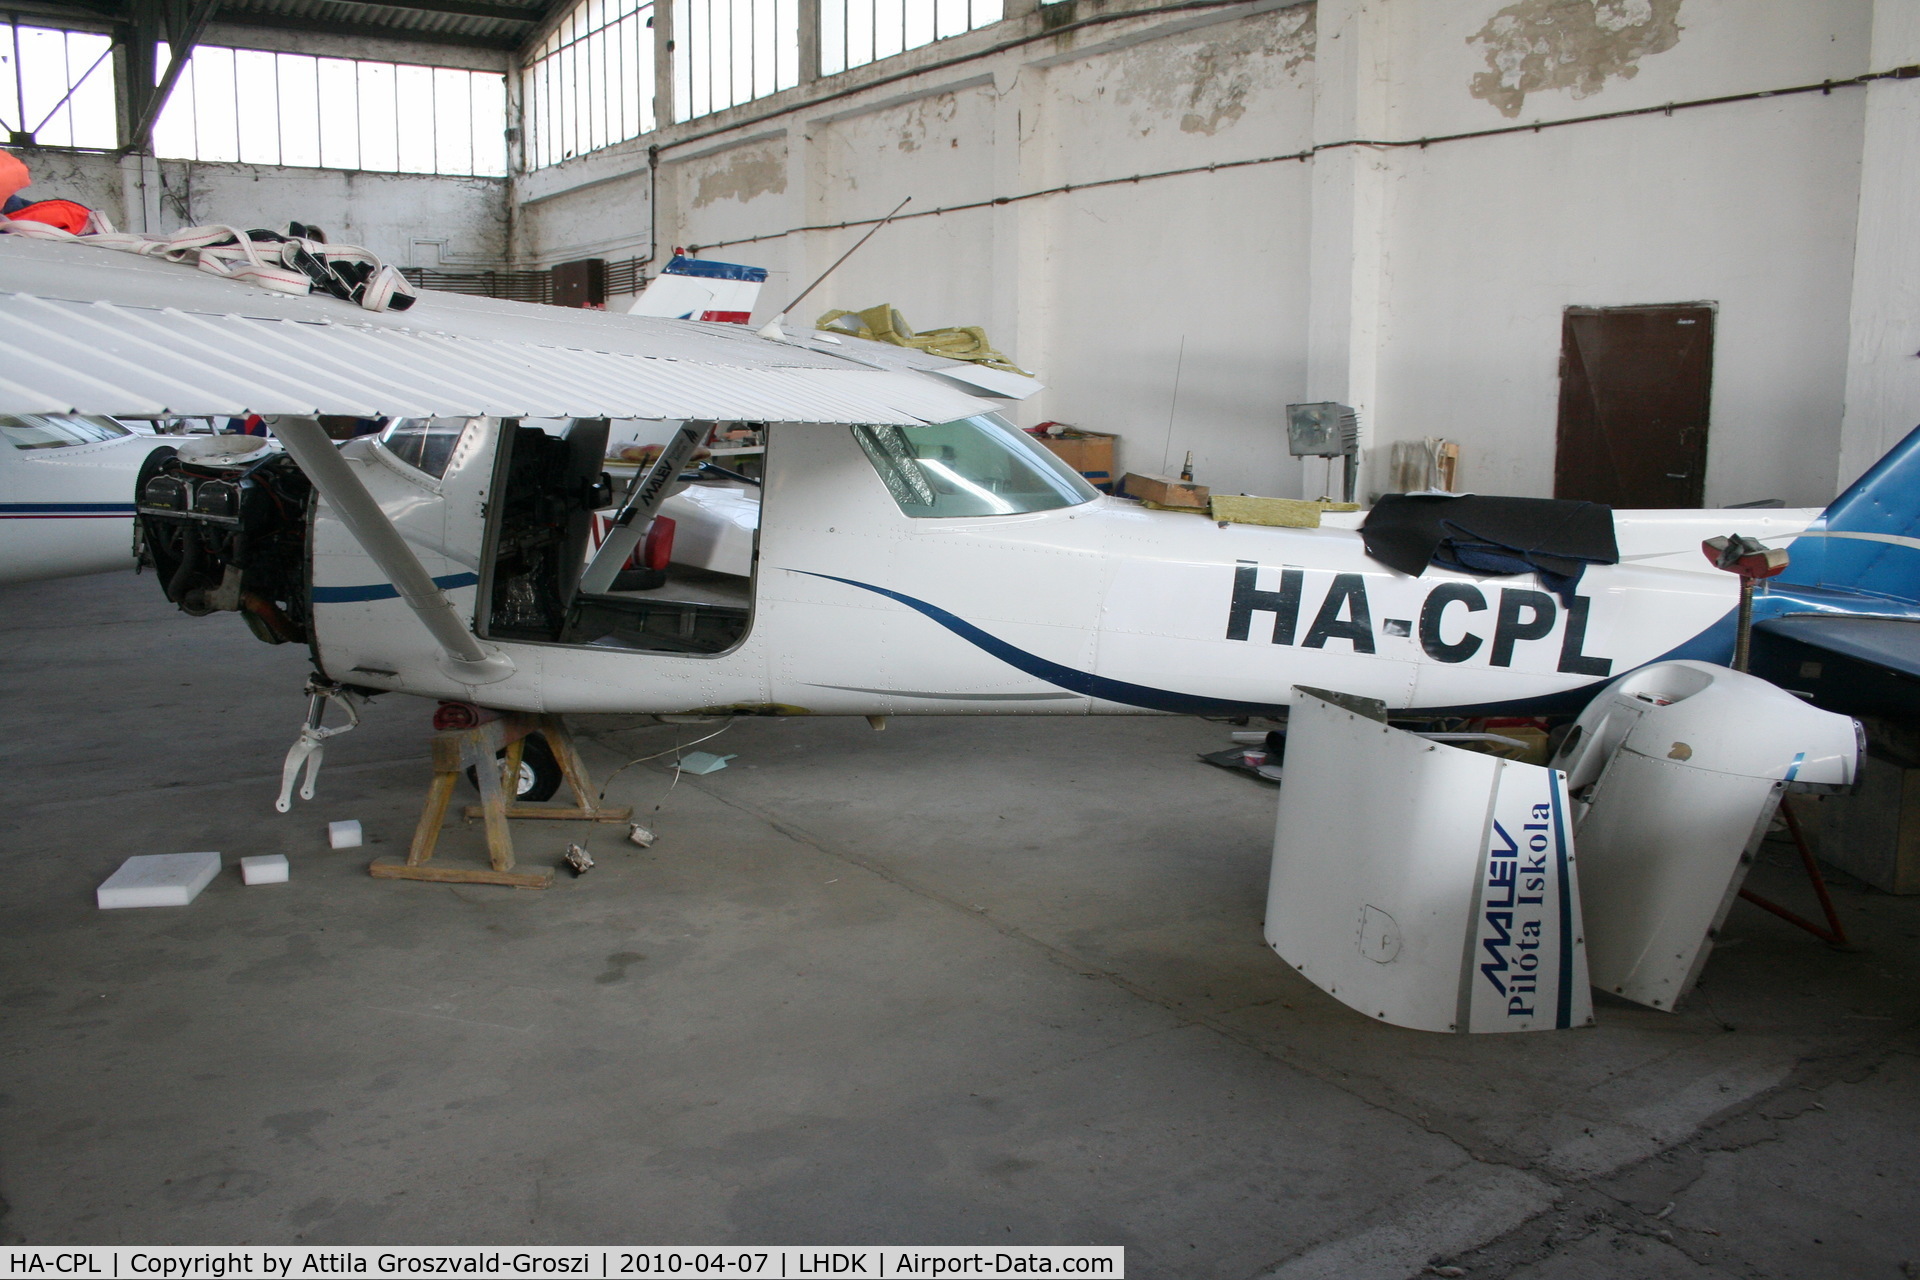 HA-CPL, 1981 Cessna 152 C/N 15285378, LHDK - Dunakeszi Airport, Hungary